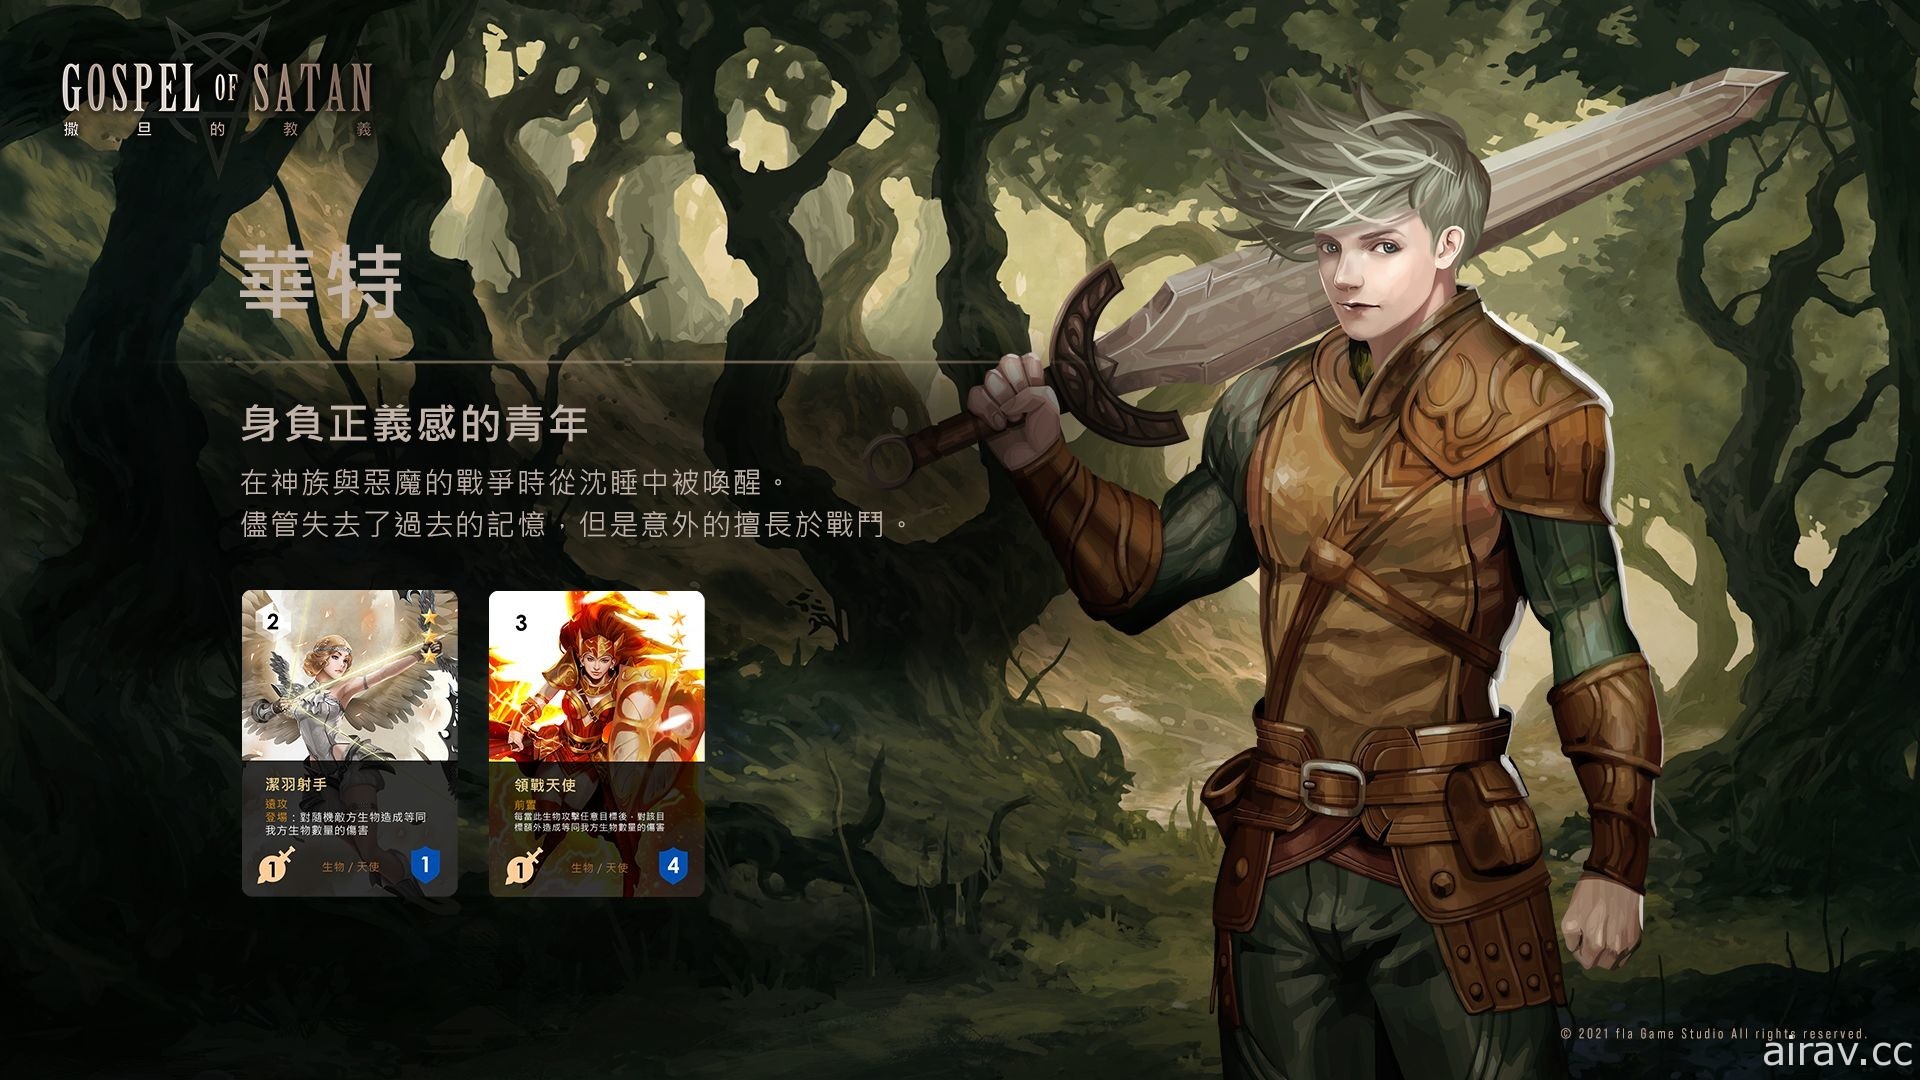 台灣團隊打造卡牌戰略遊戲 《撒旦的教義》1 月 25 日展開封測 釋出玩法、英雄介紹